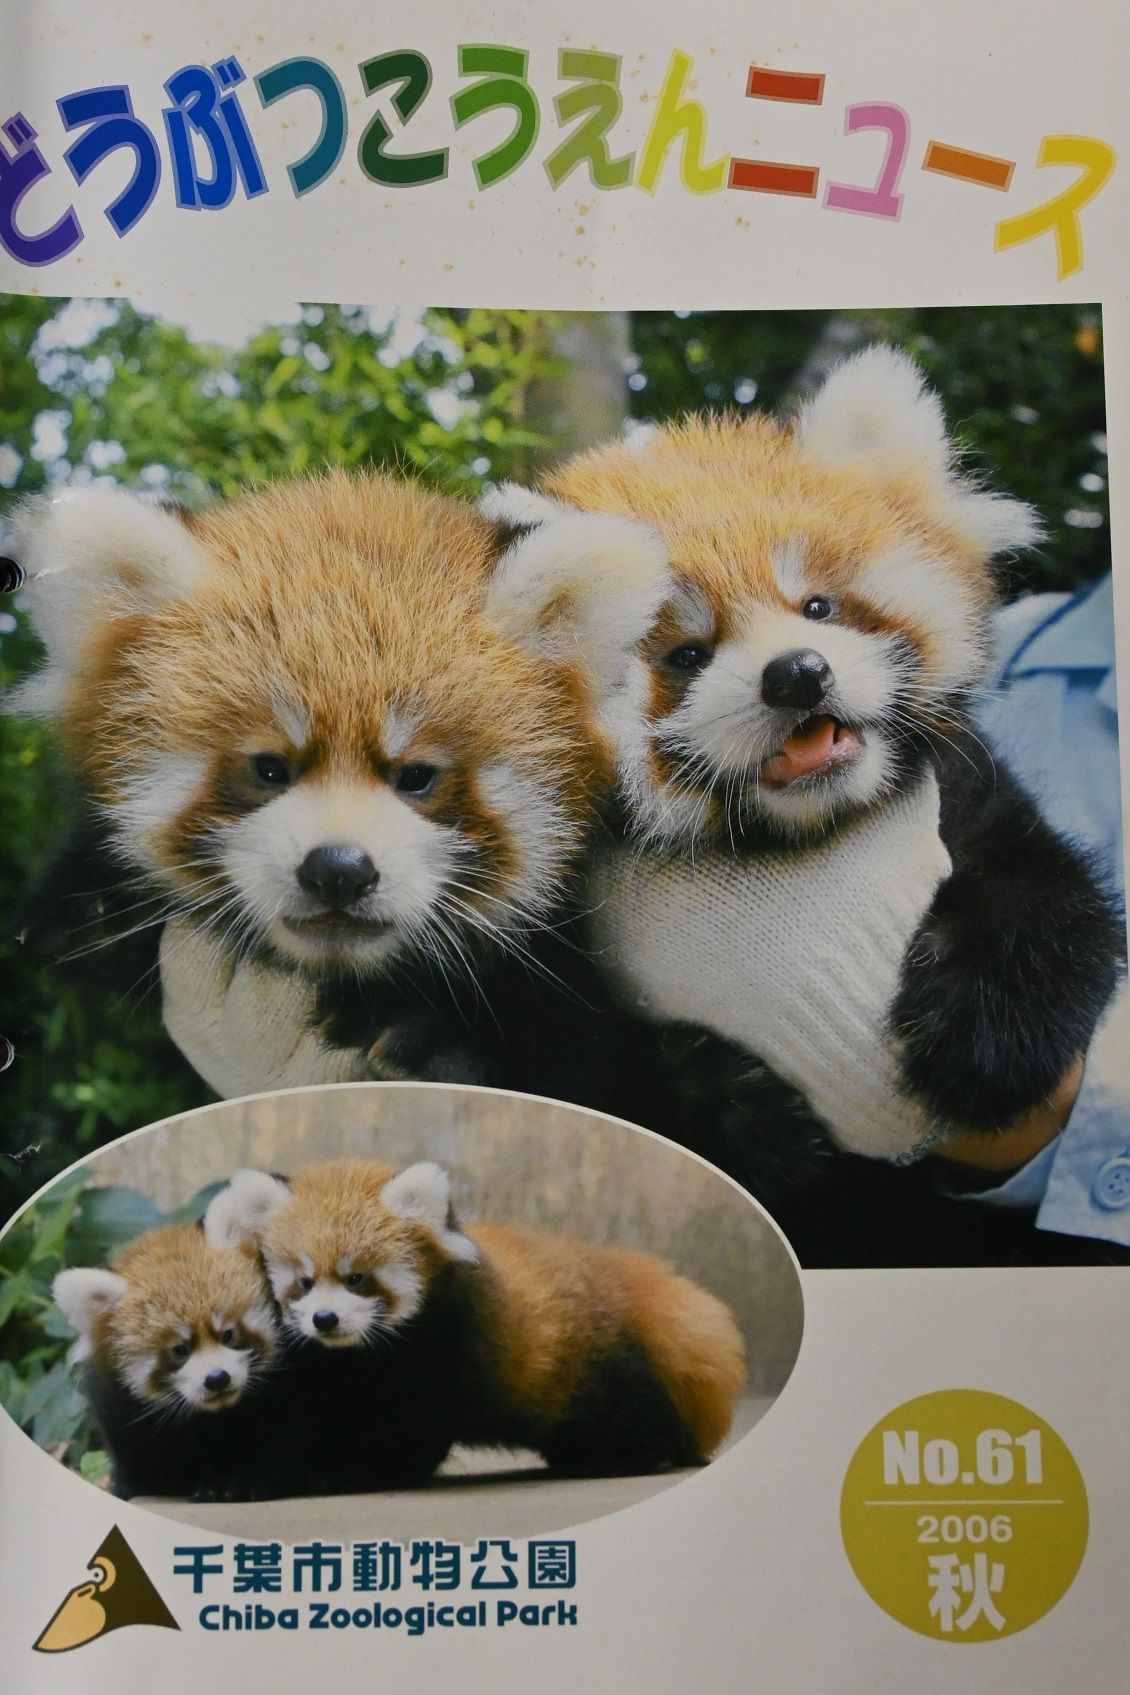 風太・チィチィ夫妻に待望の子が生まれた時には、千葉市動物公園発行のどうぶつこうえんニュースの表紙を飾った